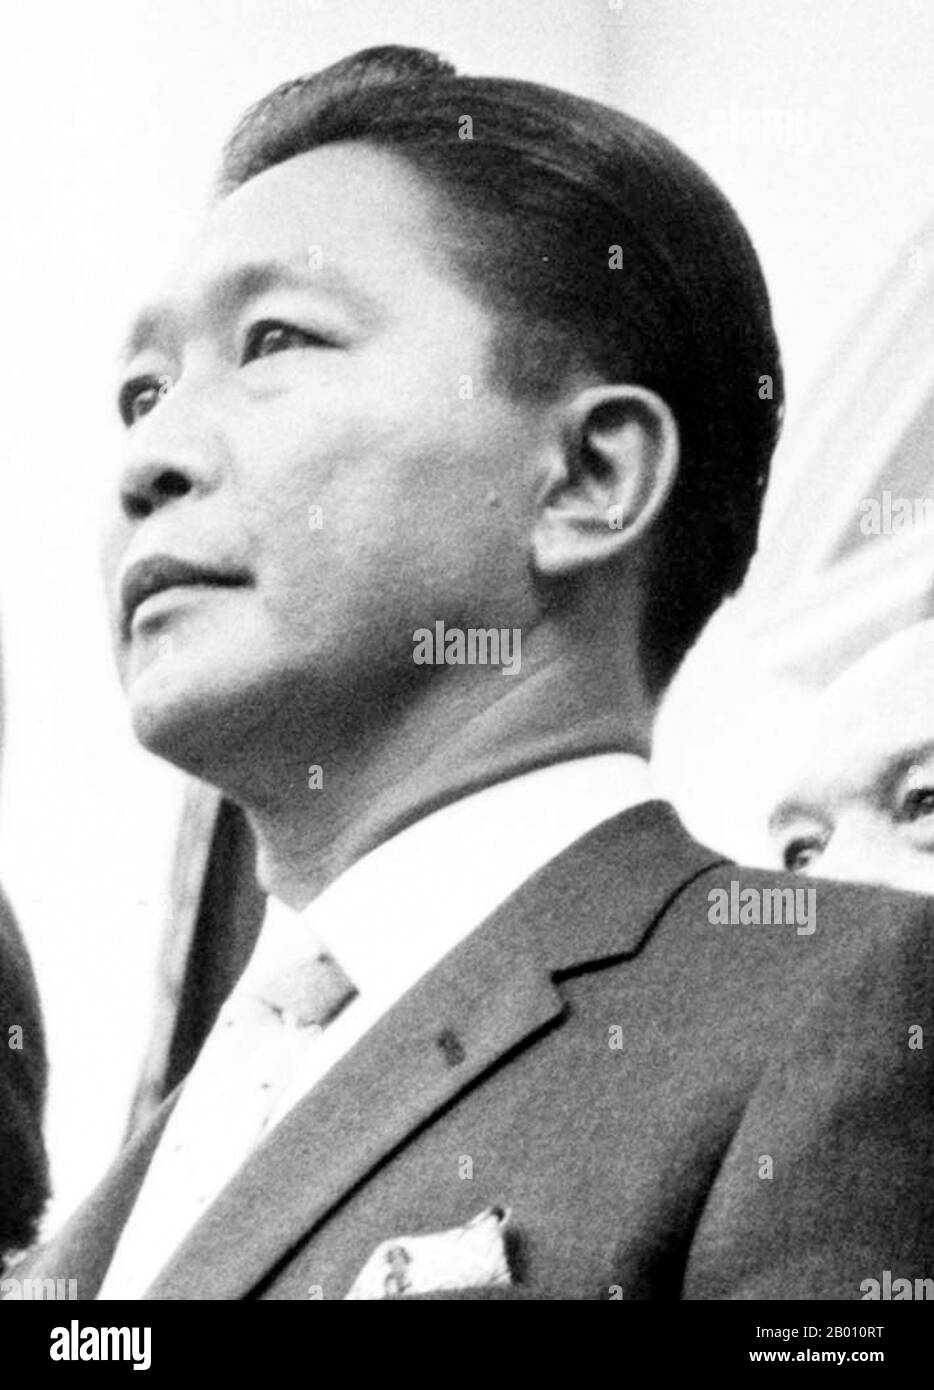 Philippinen: Präsident Ferdinand Marcos im Weißen Haus, 14. September 1966. Ferdinand Emmanuel Edralin Marcos (11. September 1917 – 28. September 1989) war 10th Präsident der Philippinen von 1965 bis 1986. Er war Rechtsanwalt, Mitglied des philippinischen Repräsentantenhauses (1949–1959) und Mitglied des philippinischen Senats (1959–1965). Von 1963 bis 1965 war er Senatspräsident. 1983 wurde seine Regierung in die Ermordung seines primären politischen Gegners, Benigno Aquino, Jr., verwickelt.die Verwicklung verursachte eine Kette von Ereignissen, die schließlich zur Volksmachtrevolution 1986 führten. Stockfoto